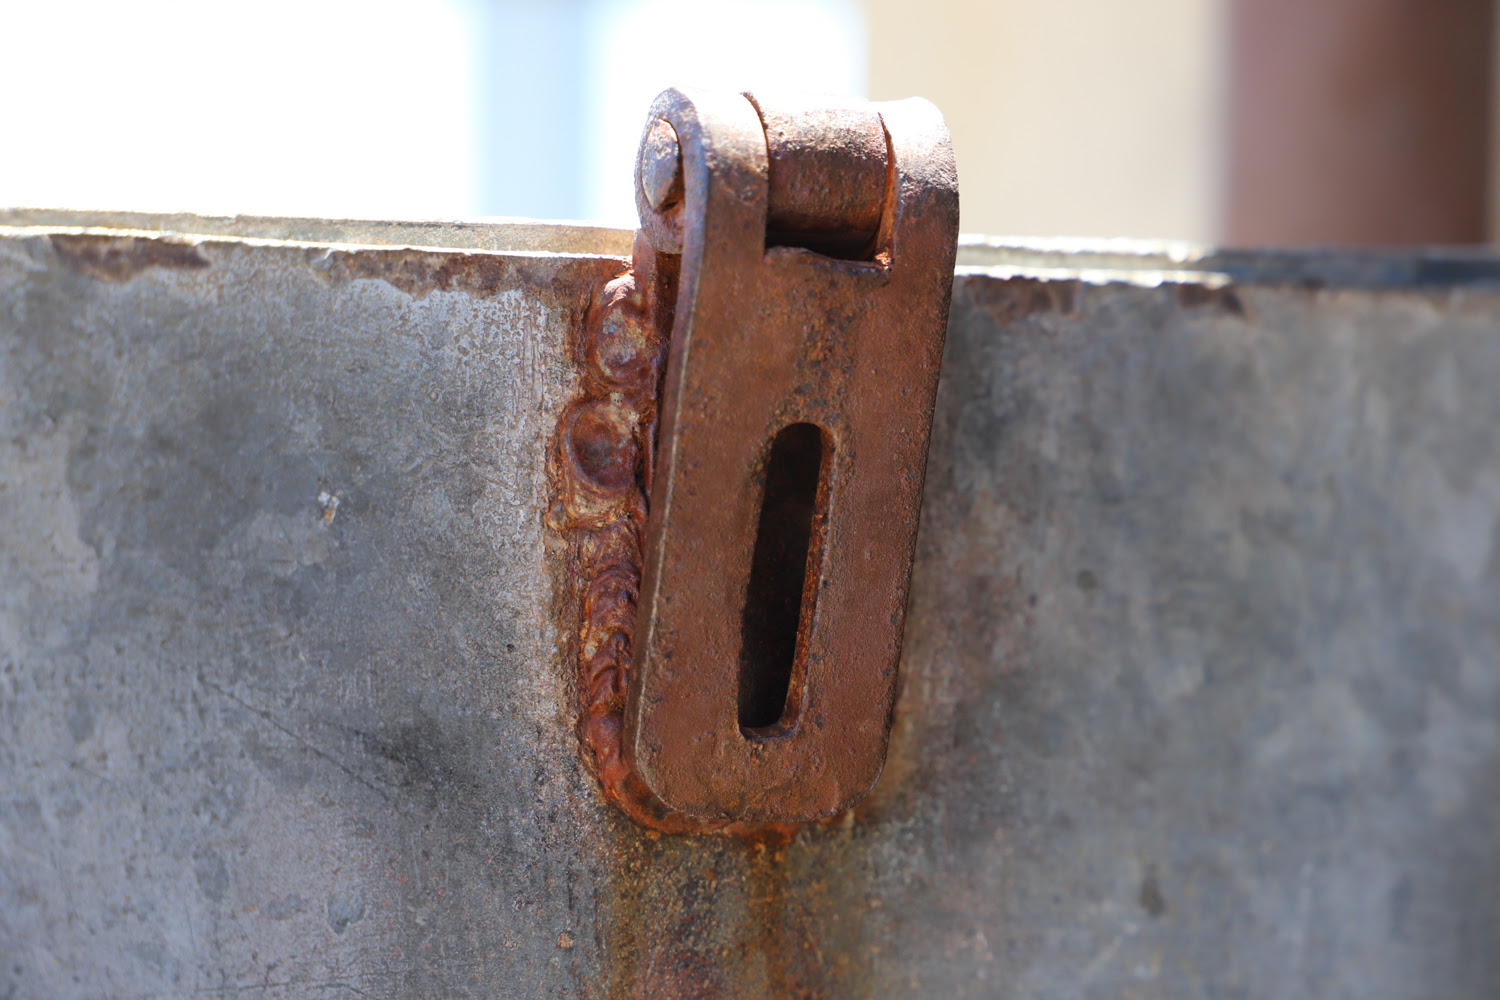 WSC galvanized corrosion on hinge